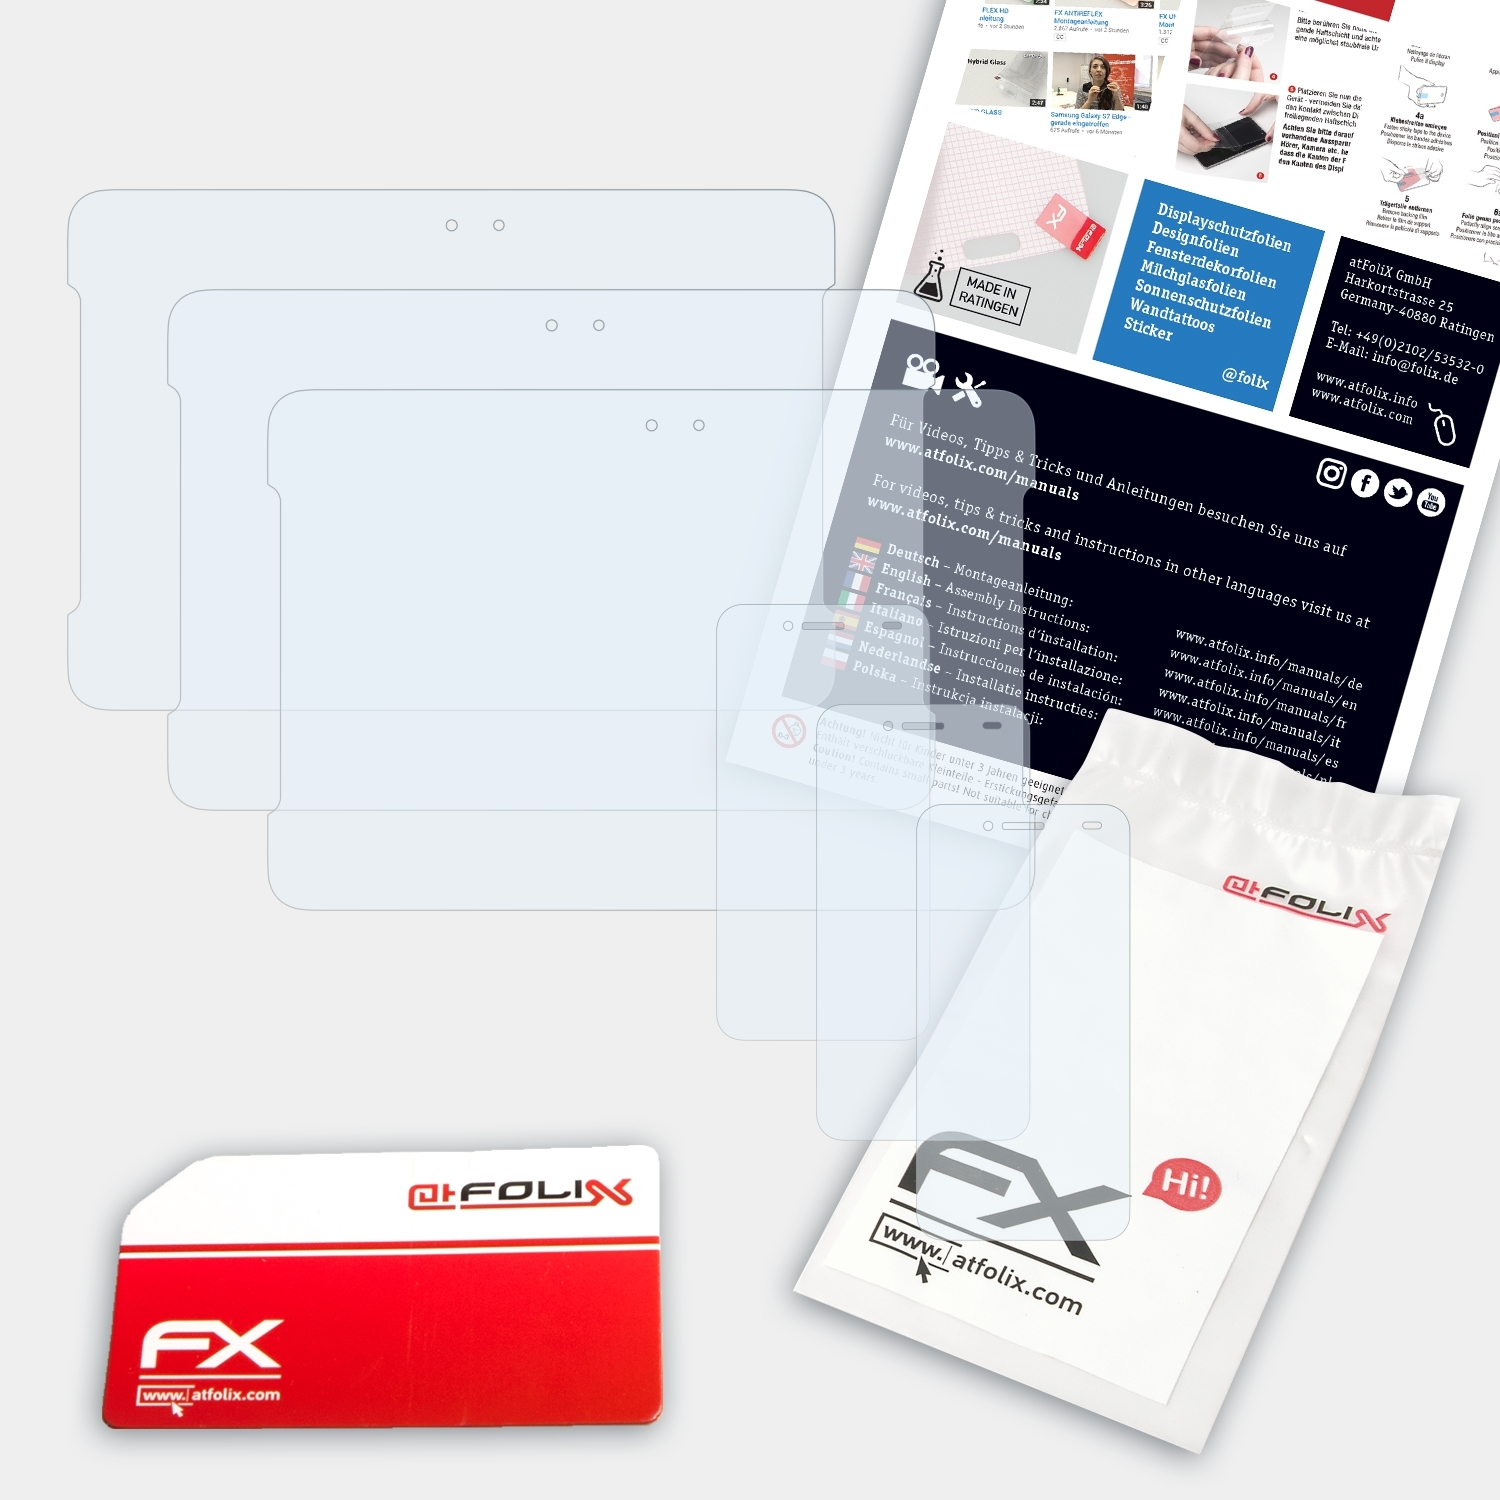 S) PadFone Asus FX-Clear ATFOLIX Displayschutz(für 3x